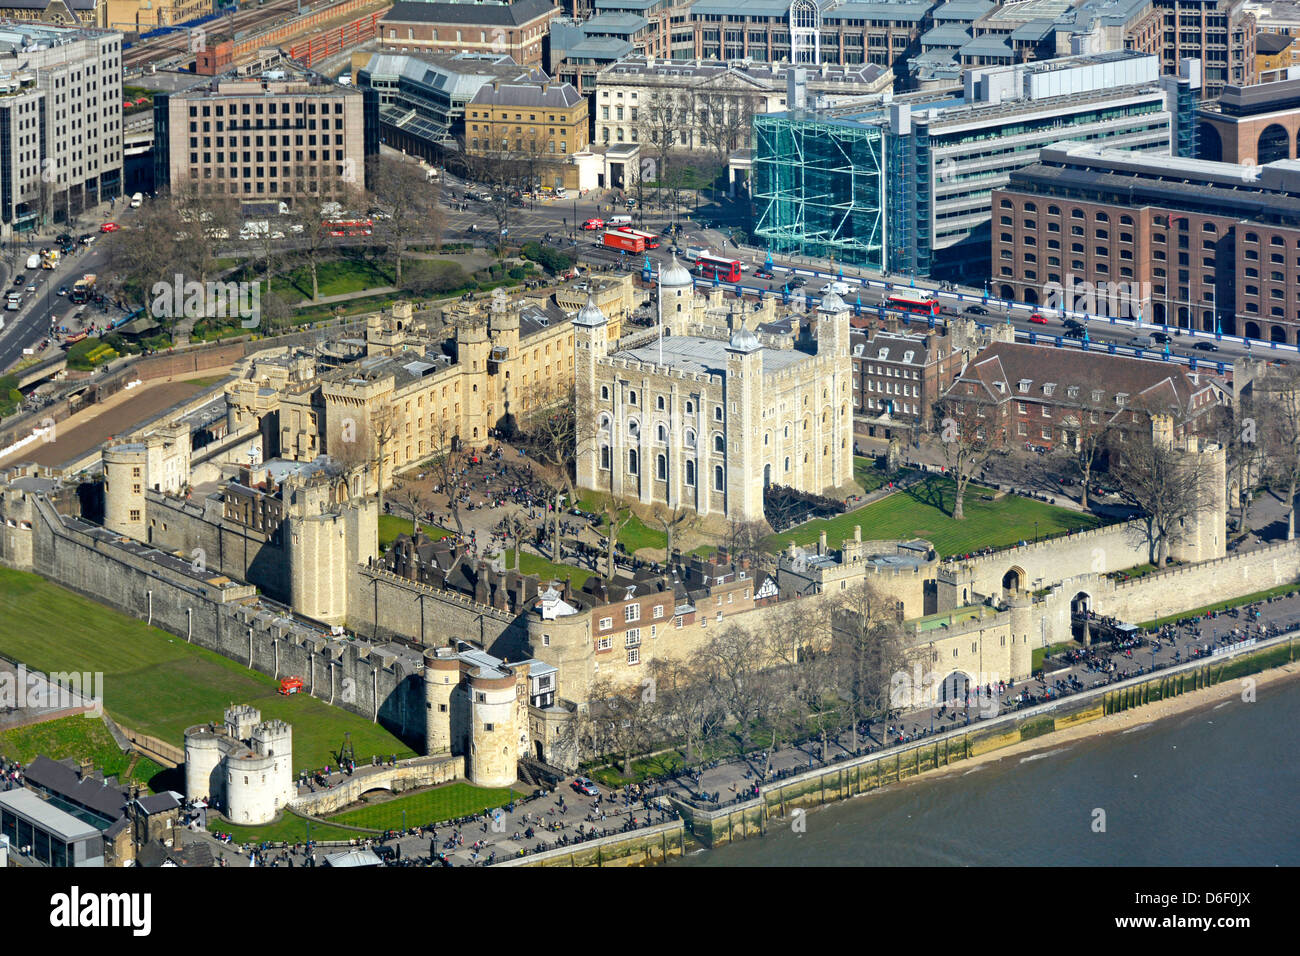 Luftbild von oben nach unten an der Tower von London und den Weißen Turm neben der Themse Blick vom Shard Hochhaus Gebäude England Großbritannien Stockfoto